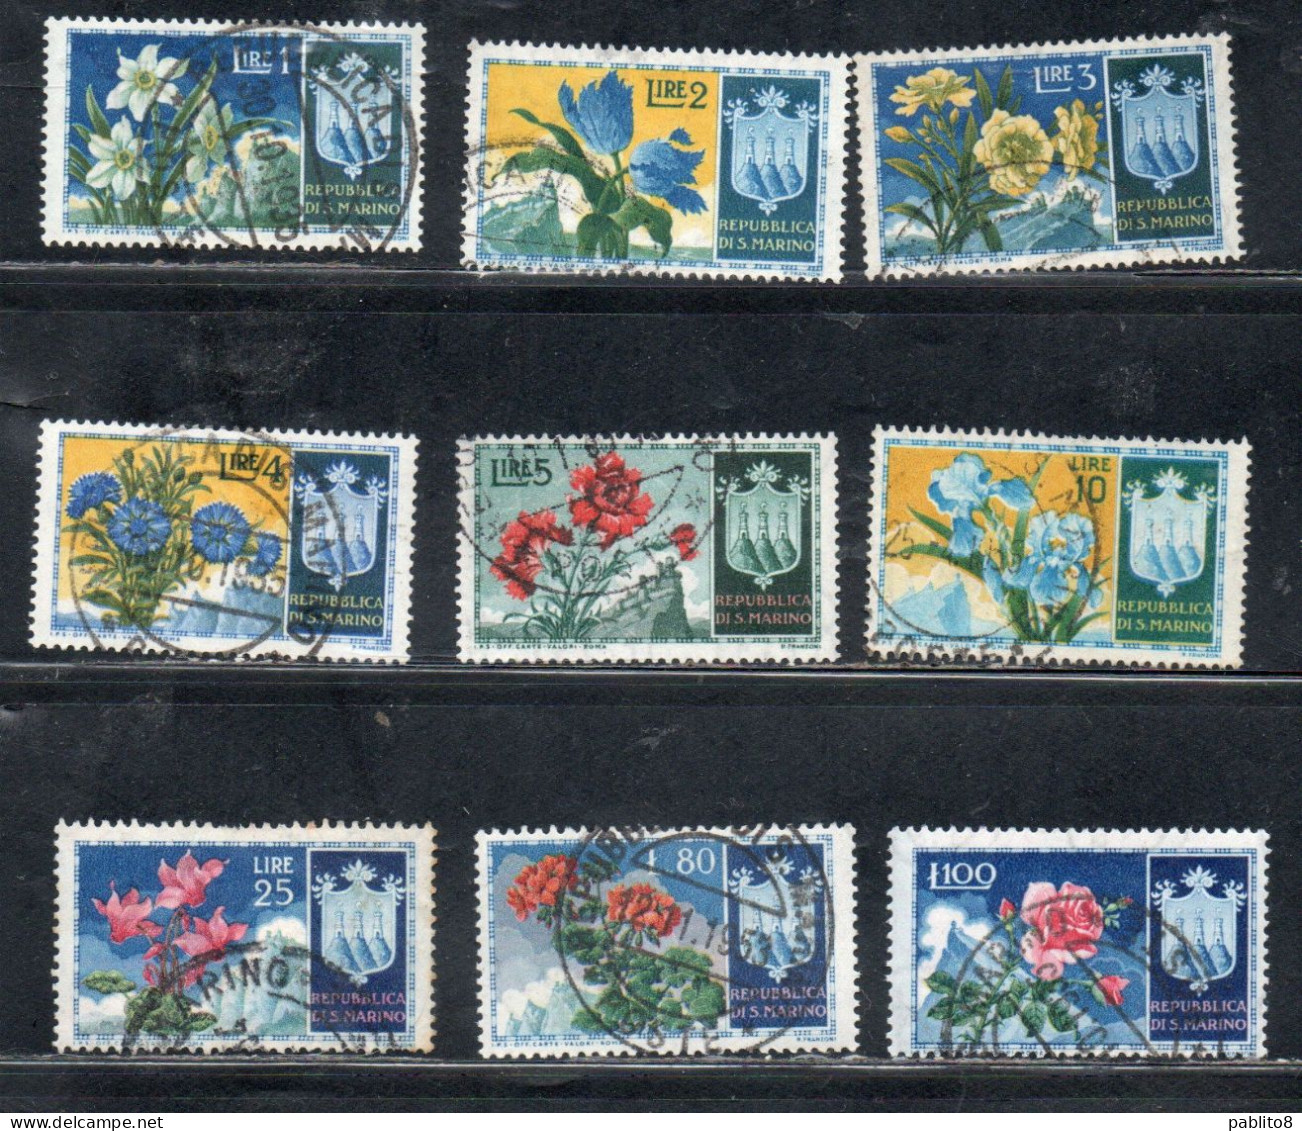 REPUBBLICA DI SAN MARINO 195 FLOR FIORI FLOWERS COMPLETE SET PRIMA EMISSIONE SERIE COMPLETA USATA USED OBLITERE' - Used Stamps